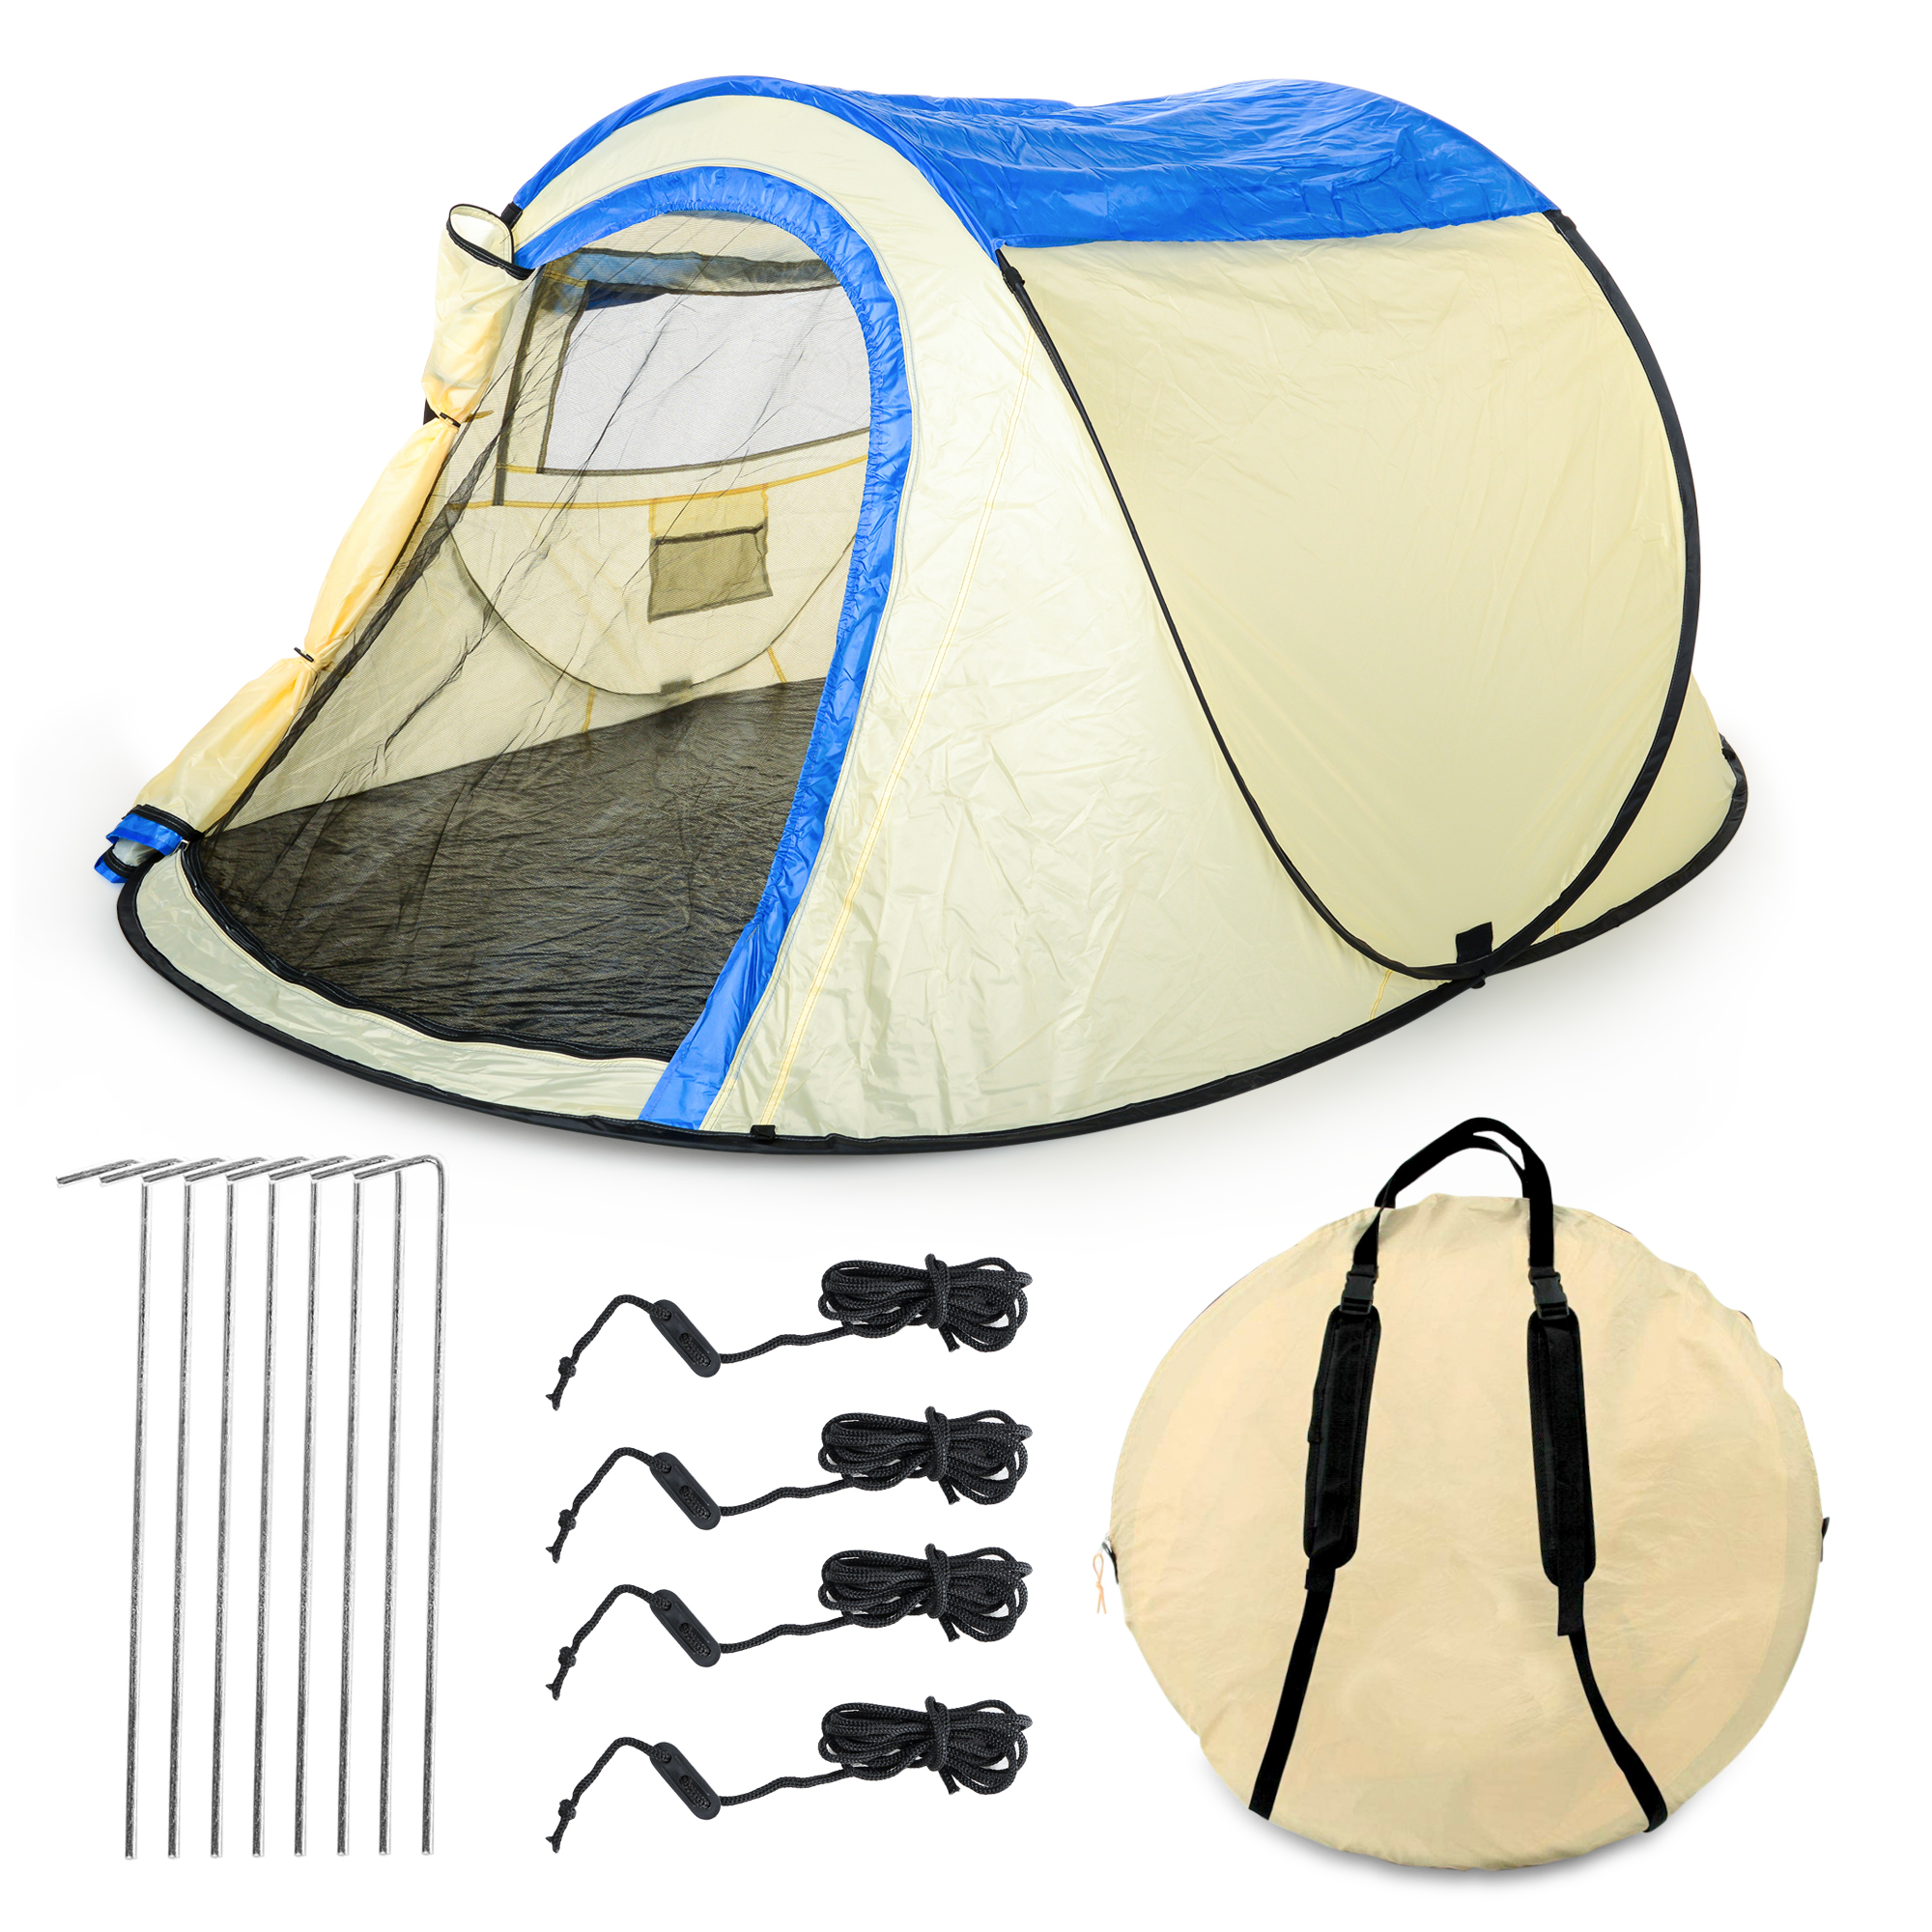 Wurfzelt Sekundenzelt 2-3 Person Outdoor Campingzelt Tent Pop Up 245x145x110cm Beige-Blau